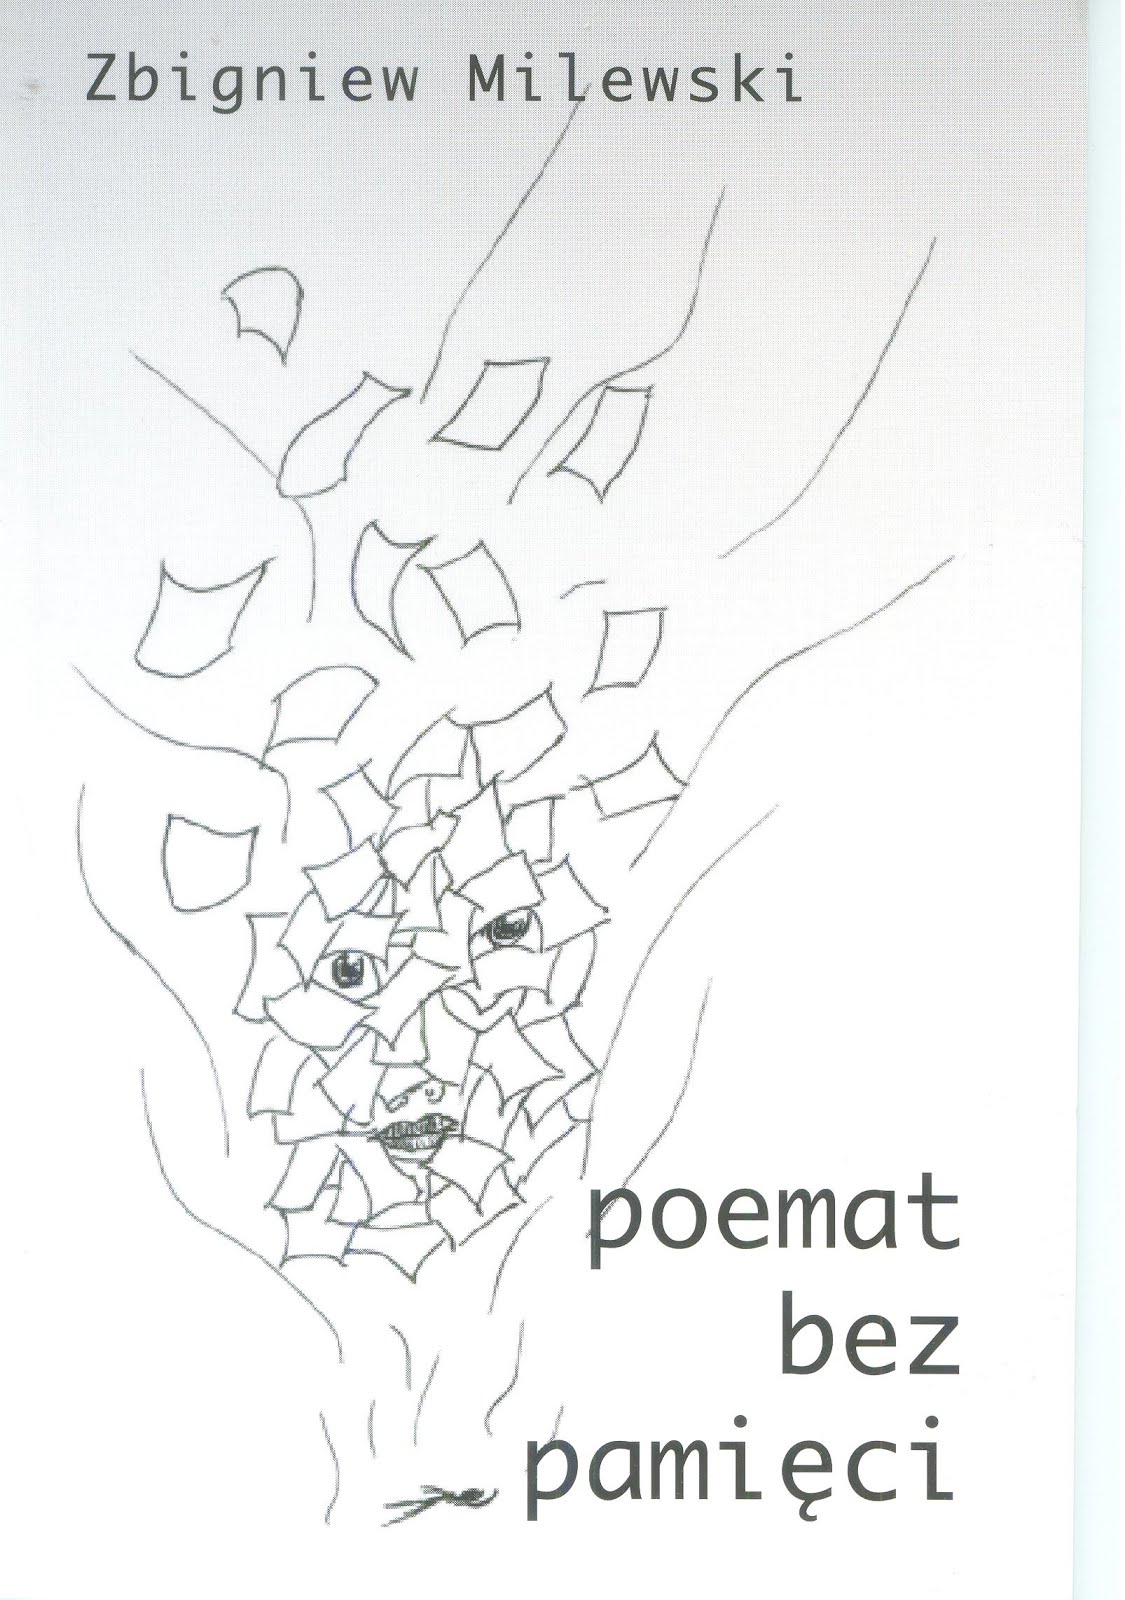 Zbigniew Milewski - "Poemat bez pamięci"